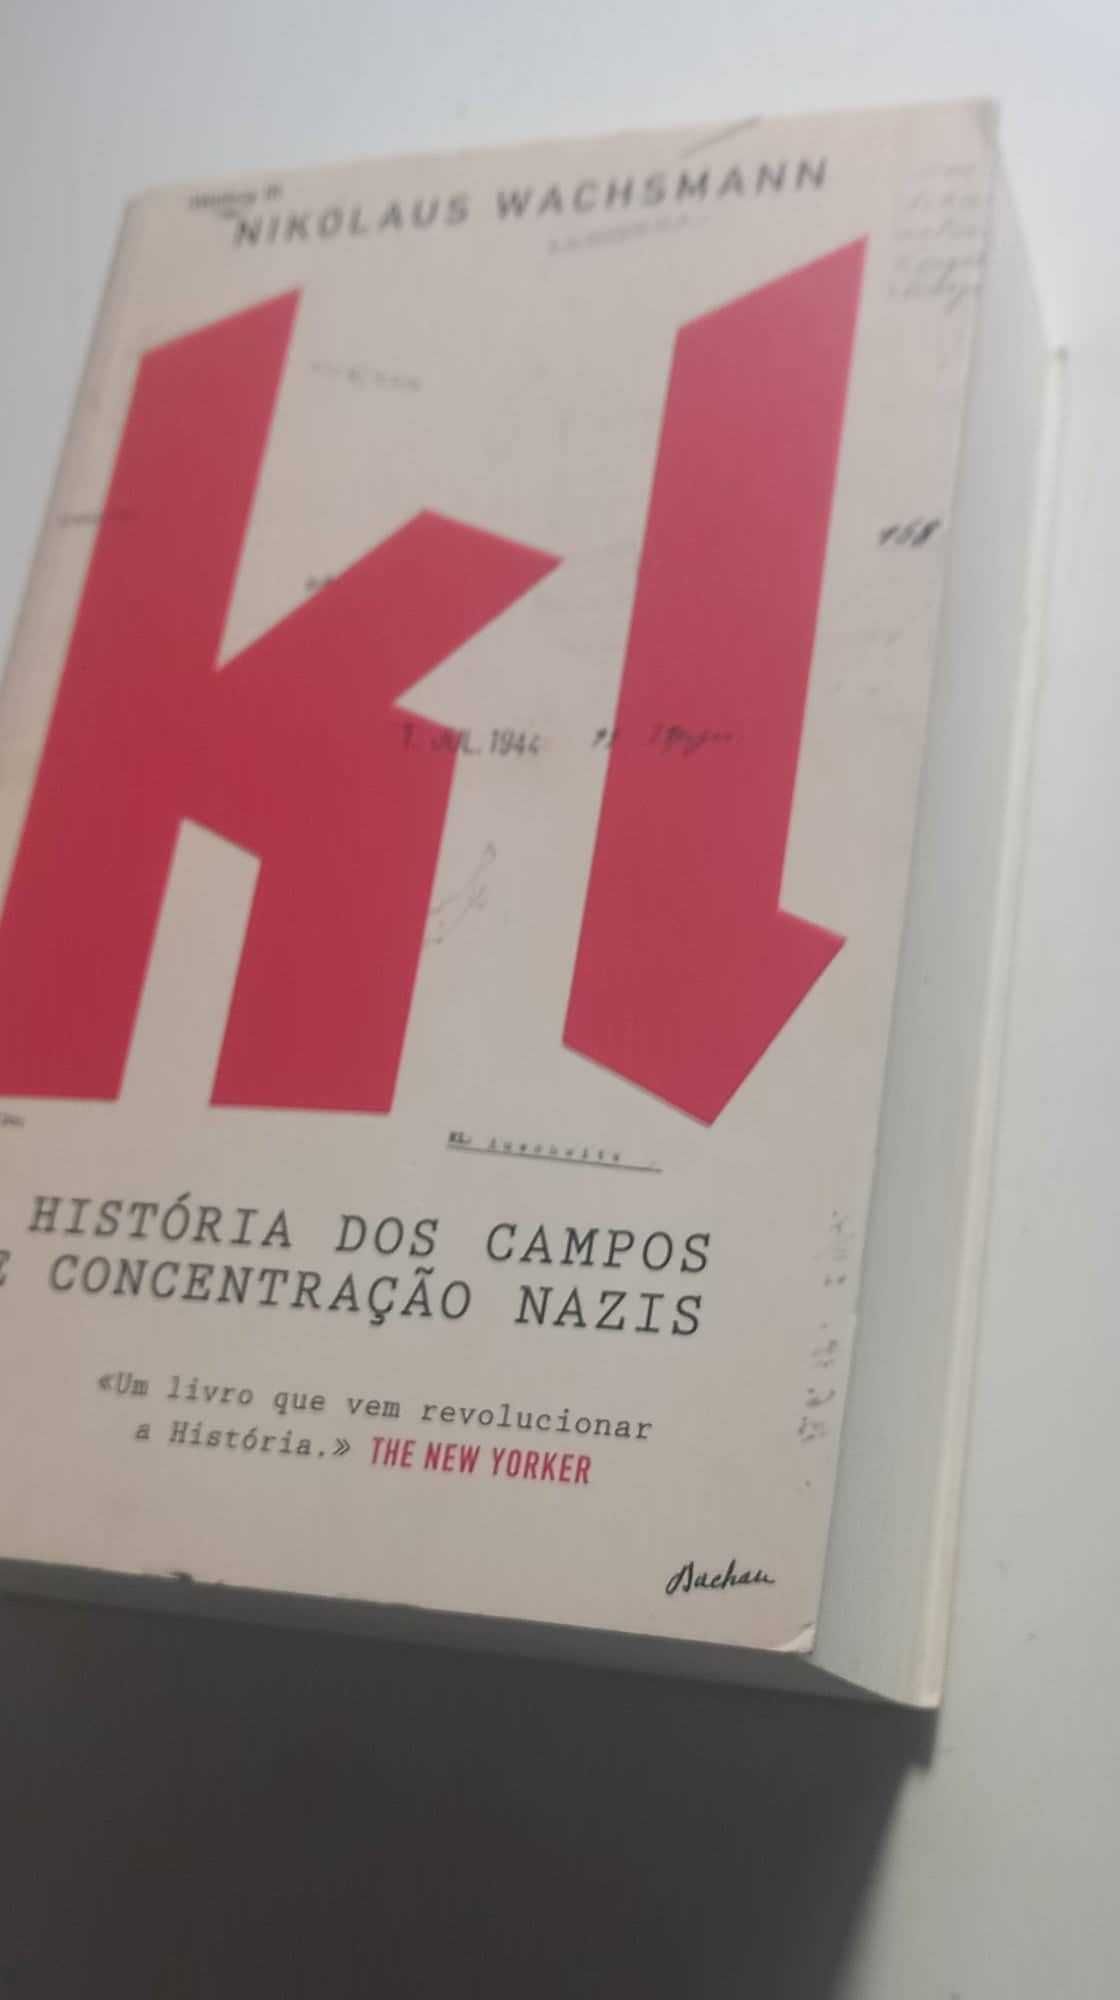 "KL - A História dos Campos de Concentração Nazis"